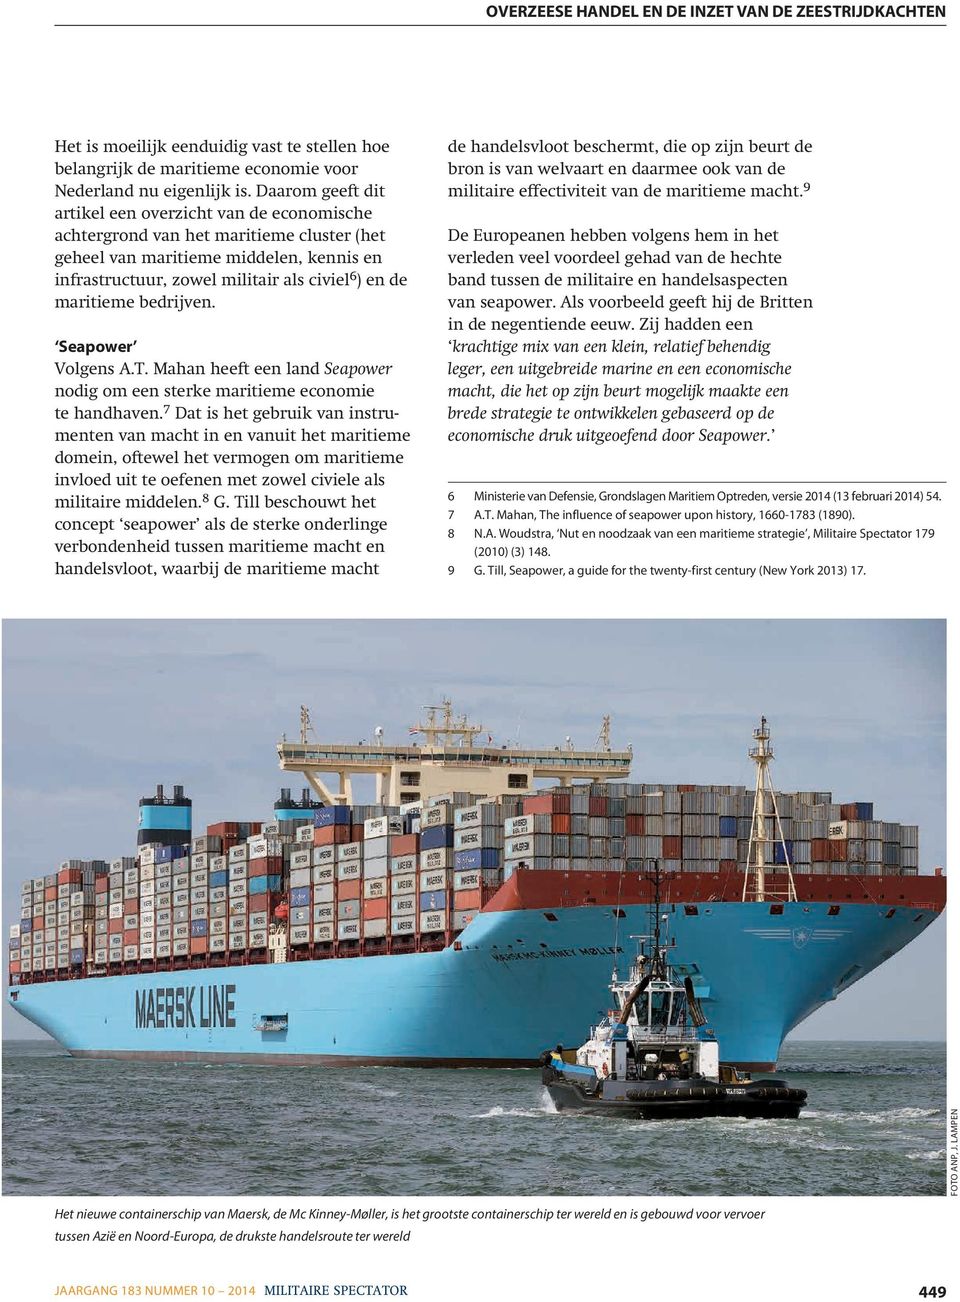 maritieme bedrijven. Seapower Volgens A.T. Mahan heeft een land Seapower nodig om een sterke maritieme economie te handhaven.